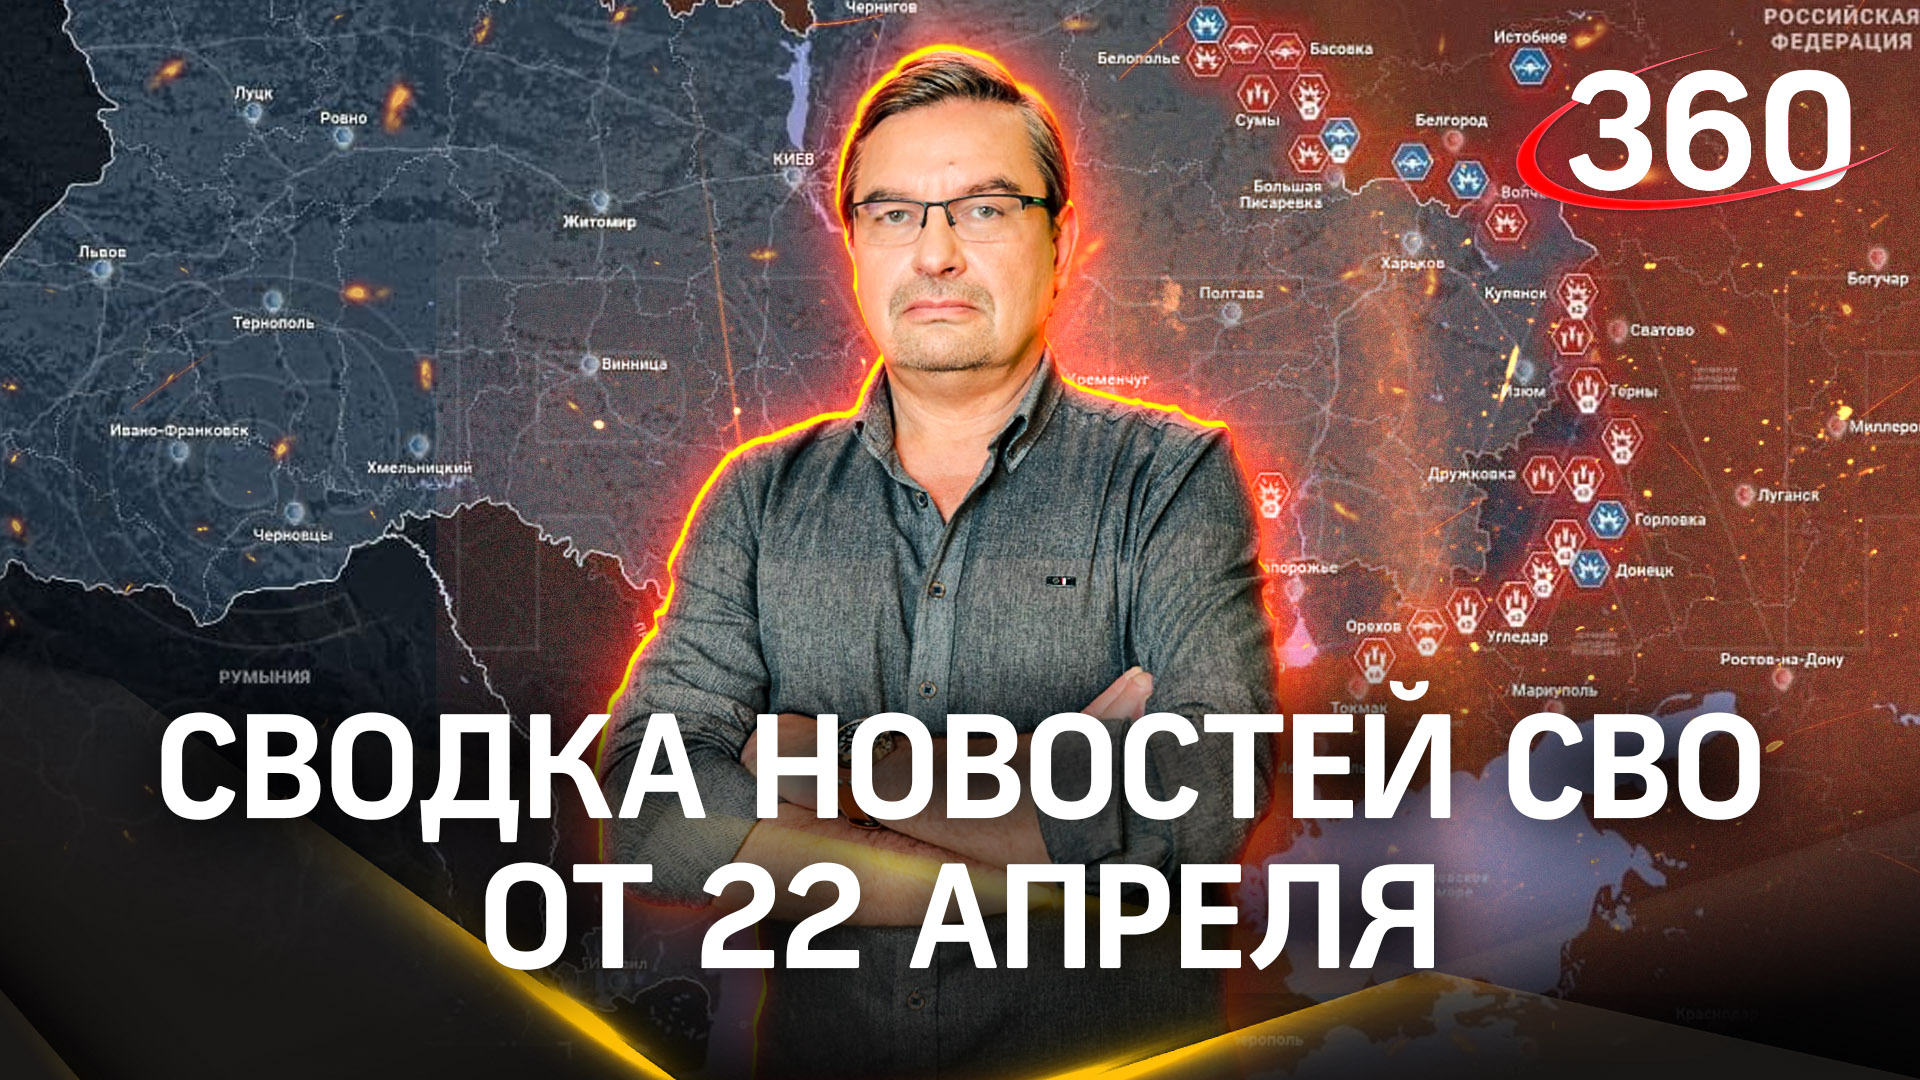 Михаил Онуфриенко: «У нас иллюзий нет за кем будет победа». Сводка новостей СВО от 22 апреля